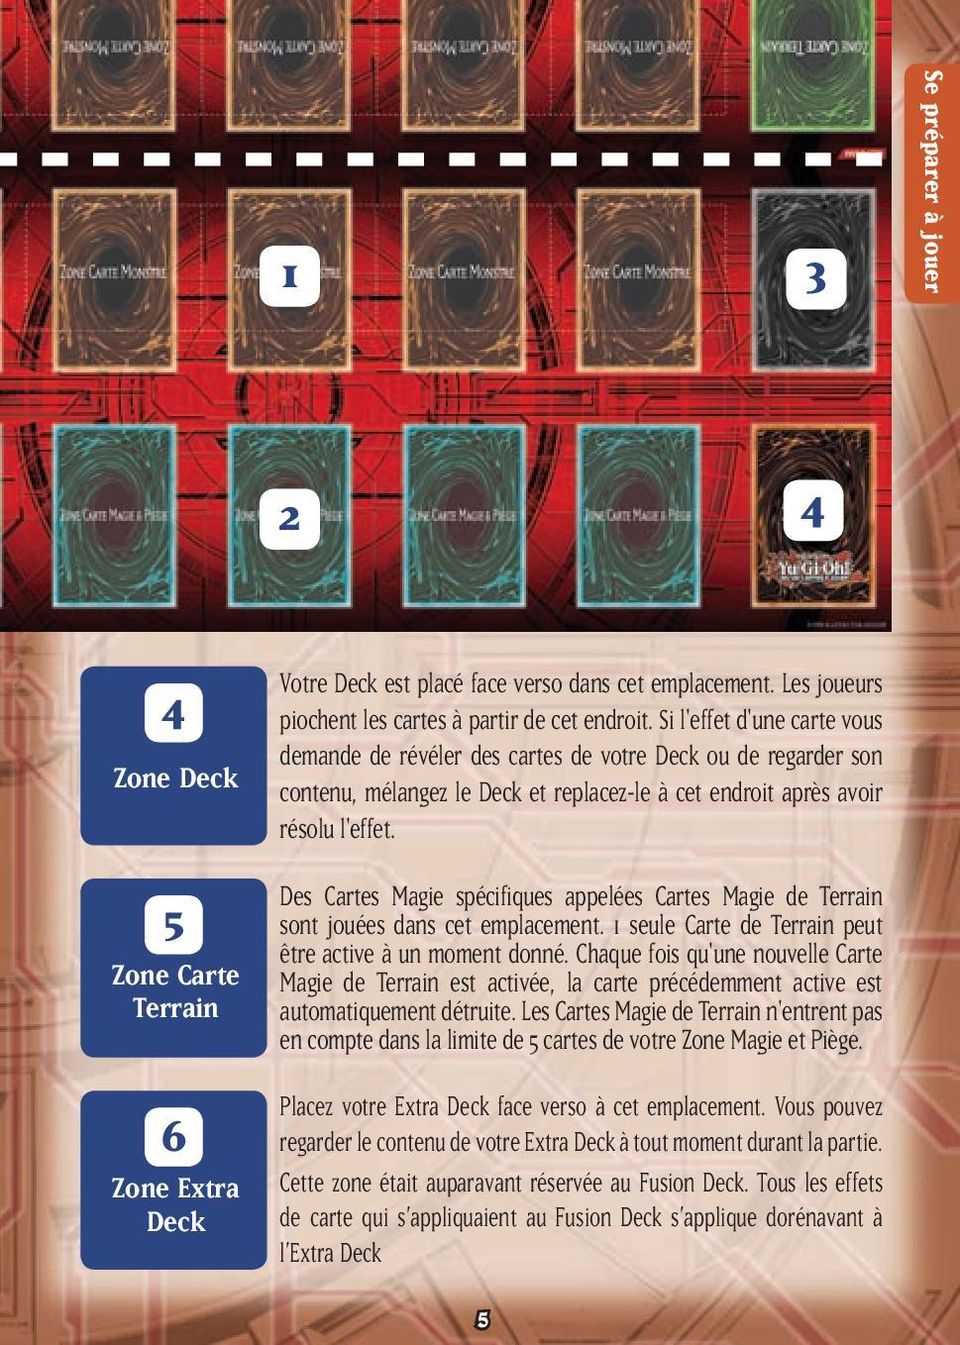 Des Cartes Magie spécifiques appelées Cartes Magie de Terrain sont jouées dans cet emplacement. 1 seule Carte de Terrain peut être active à un moment donné.